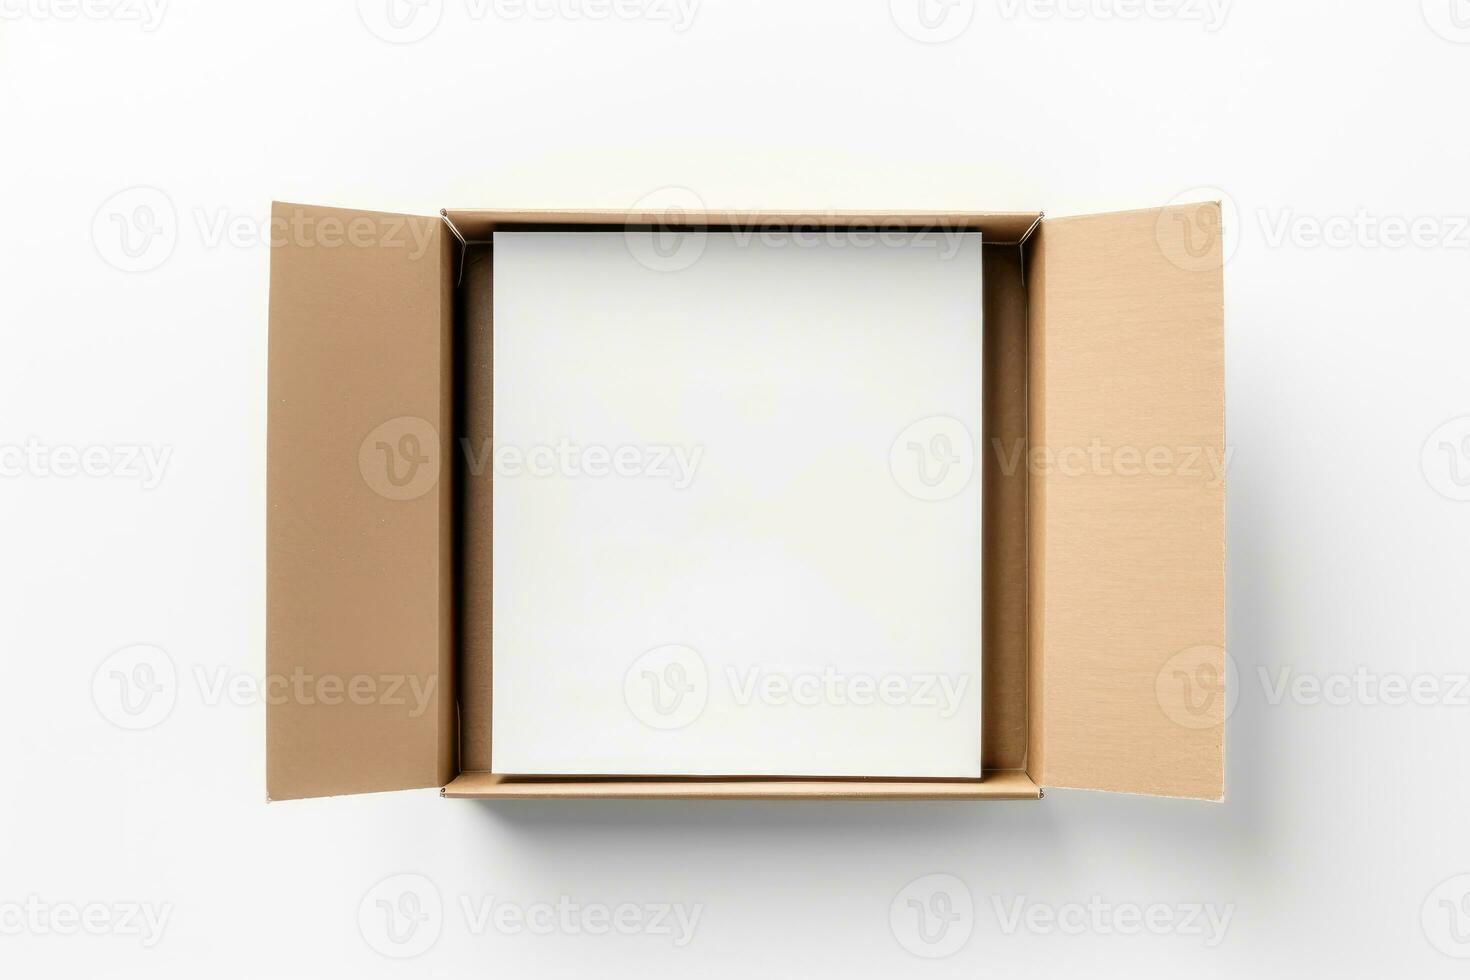 topp se av öppen kartong låda attrapp på vit bakgrund, foto